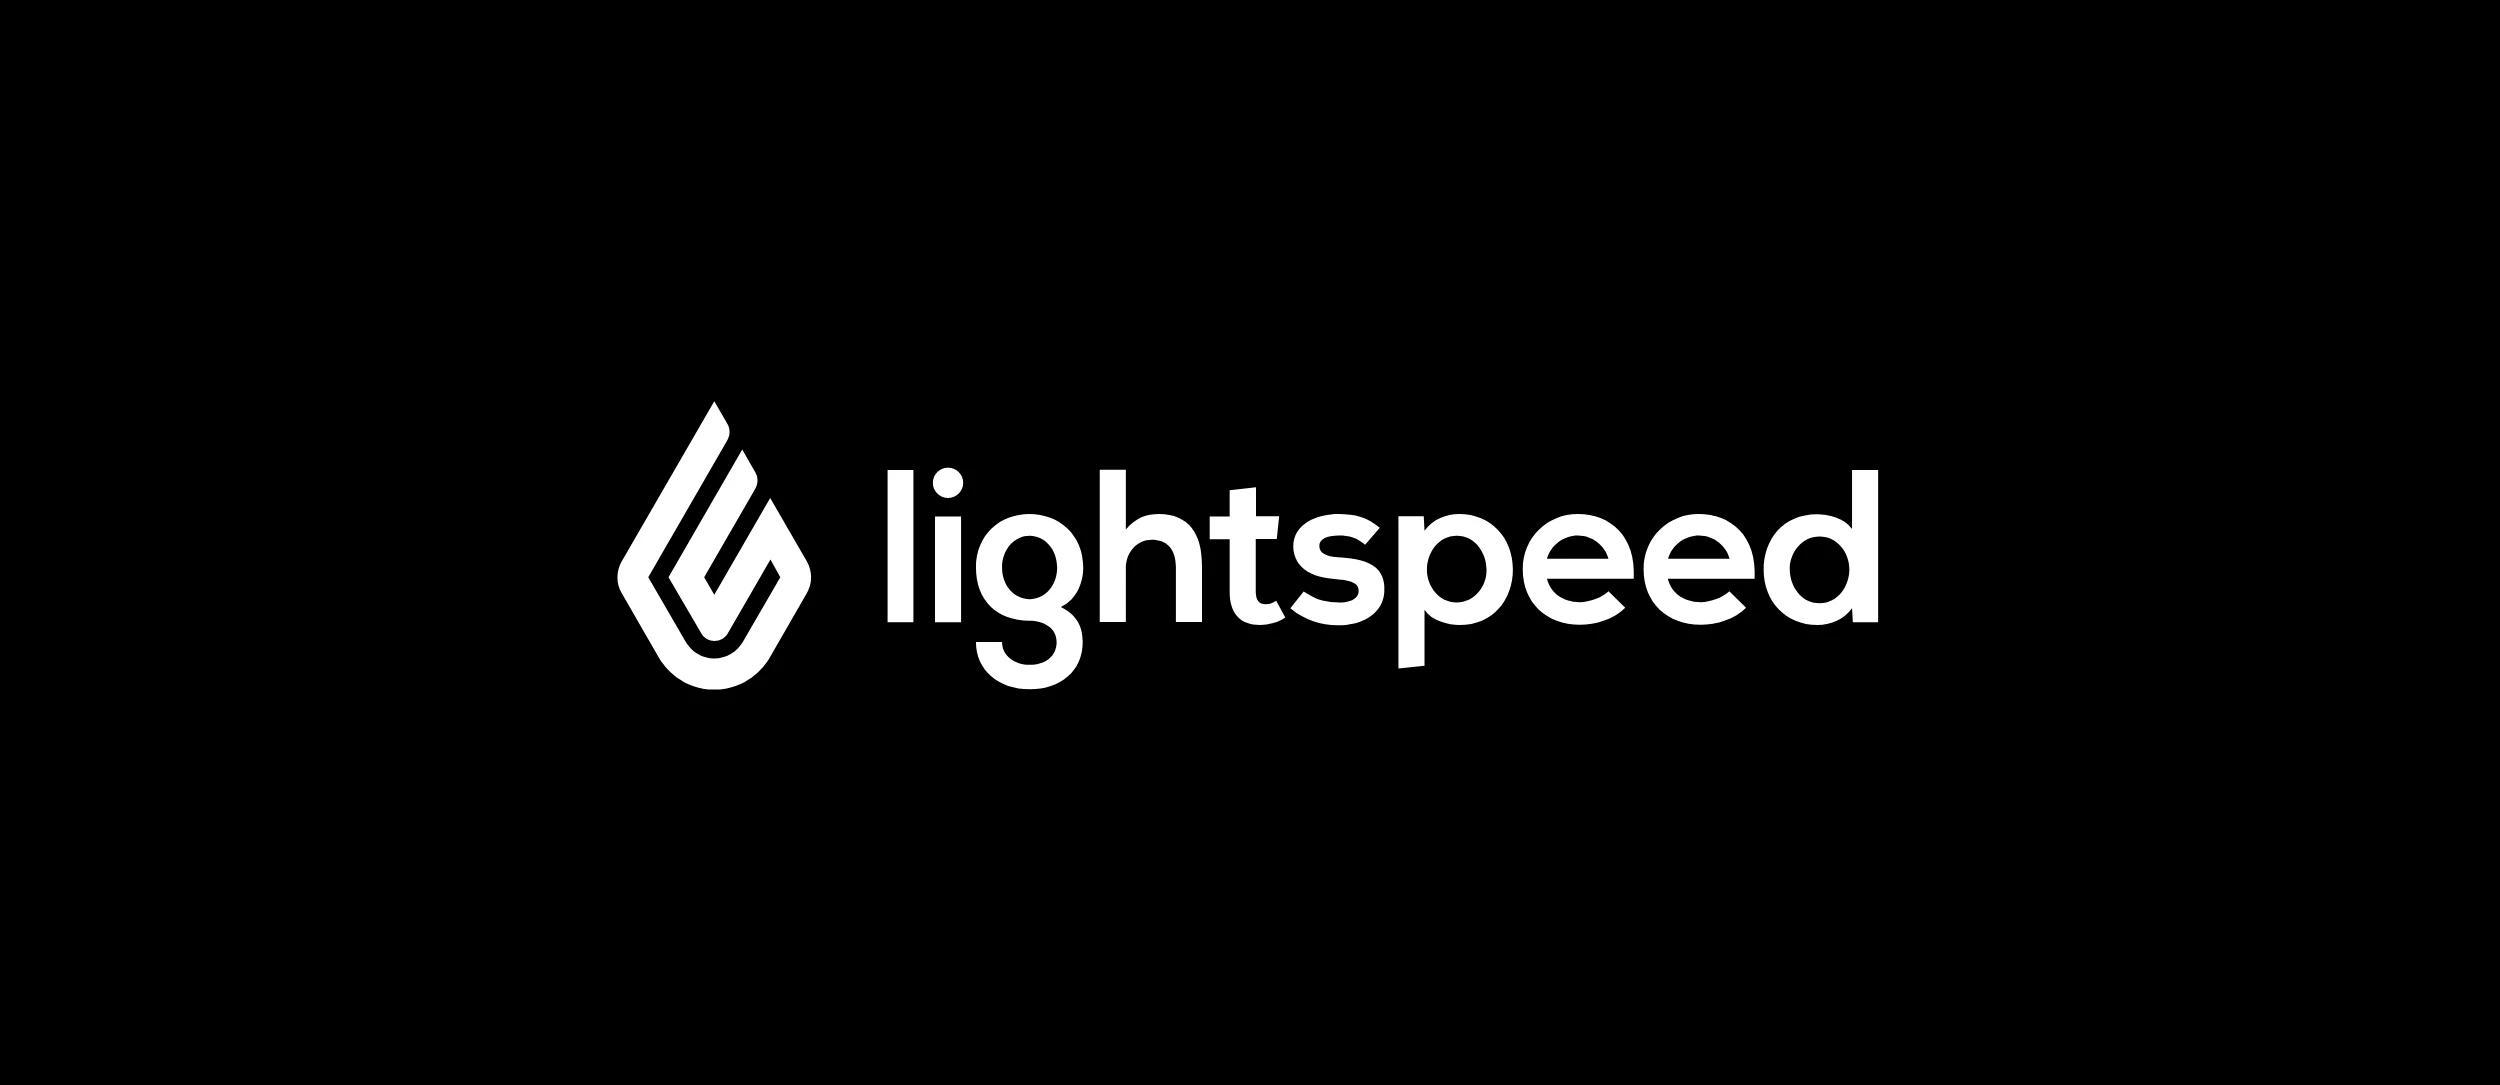 Lightspeed logo in white